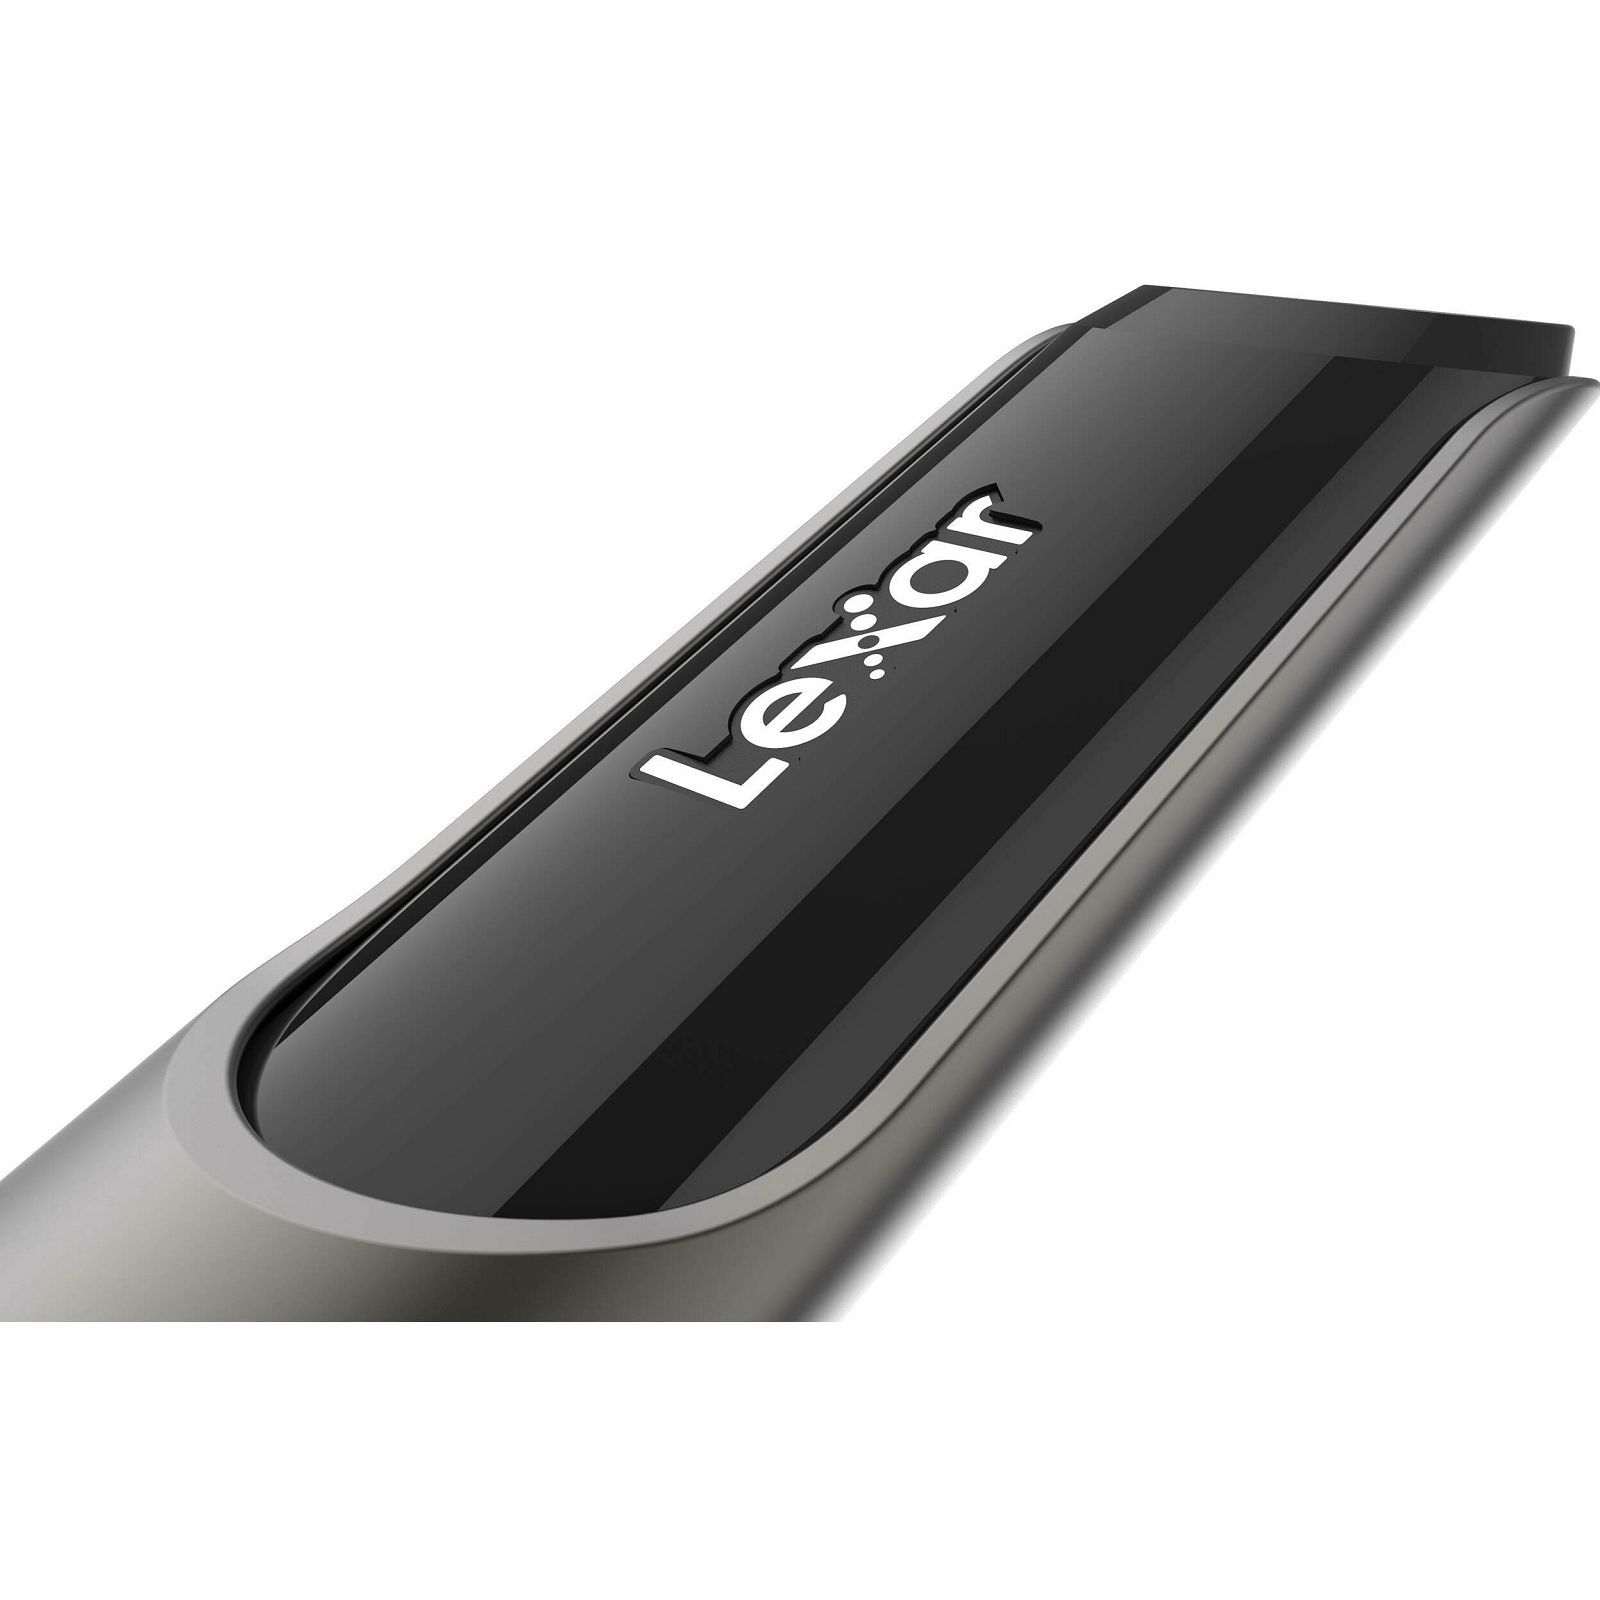 Lexar JumpDrive P30 1TB USB 3.2 Gen 1 Flash Drive 450MB/s read 450MB/s write memorija (LJDP030001T-RNQNG)